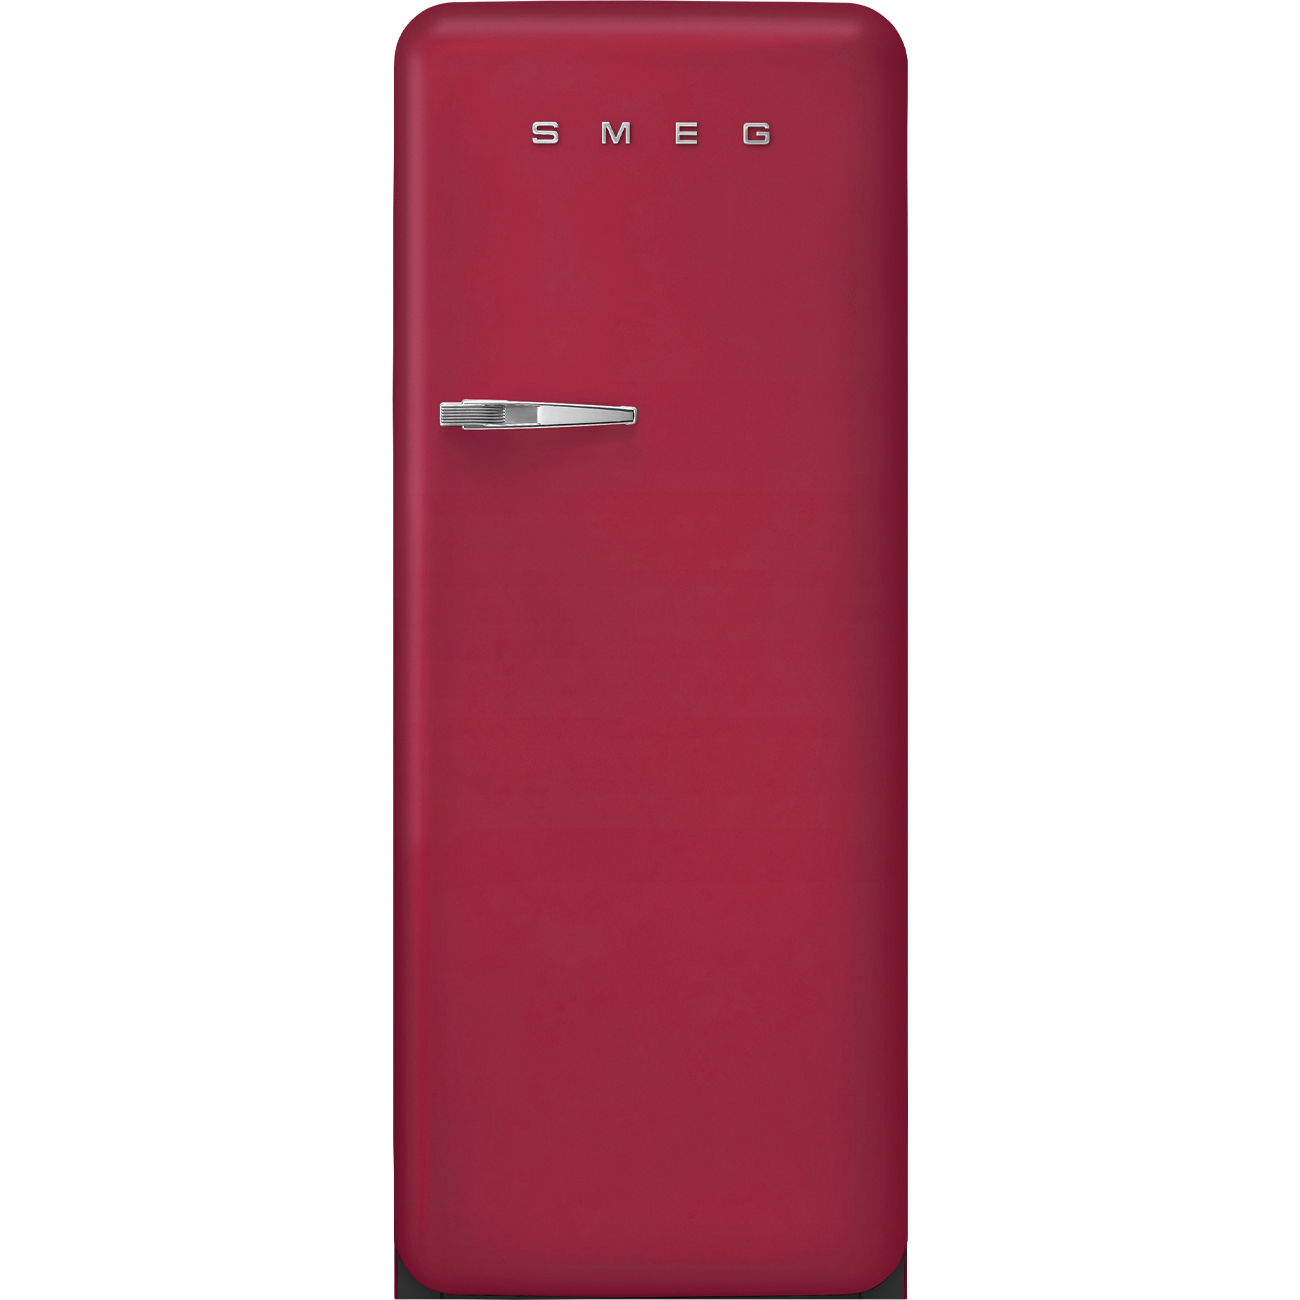 Ruby Red refrigerator - Smeg_1